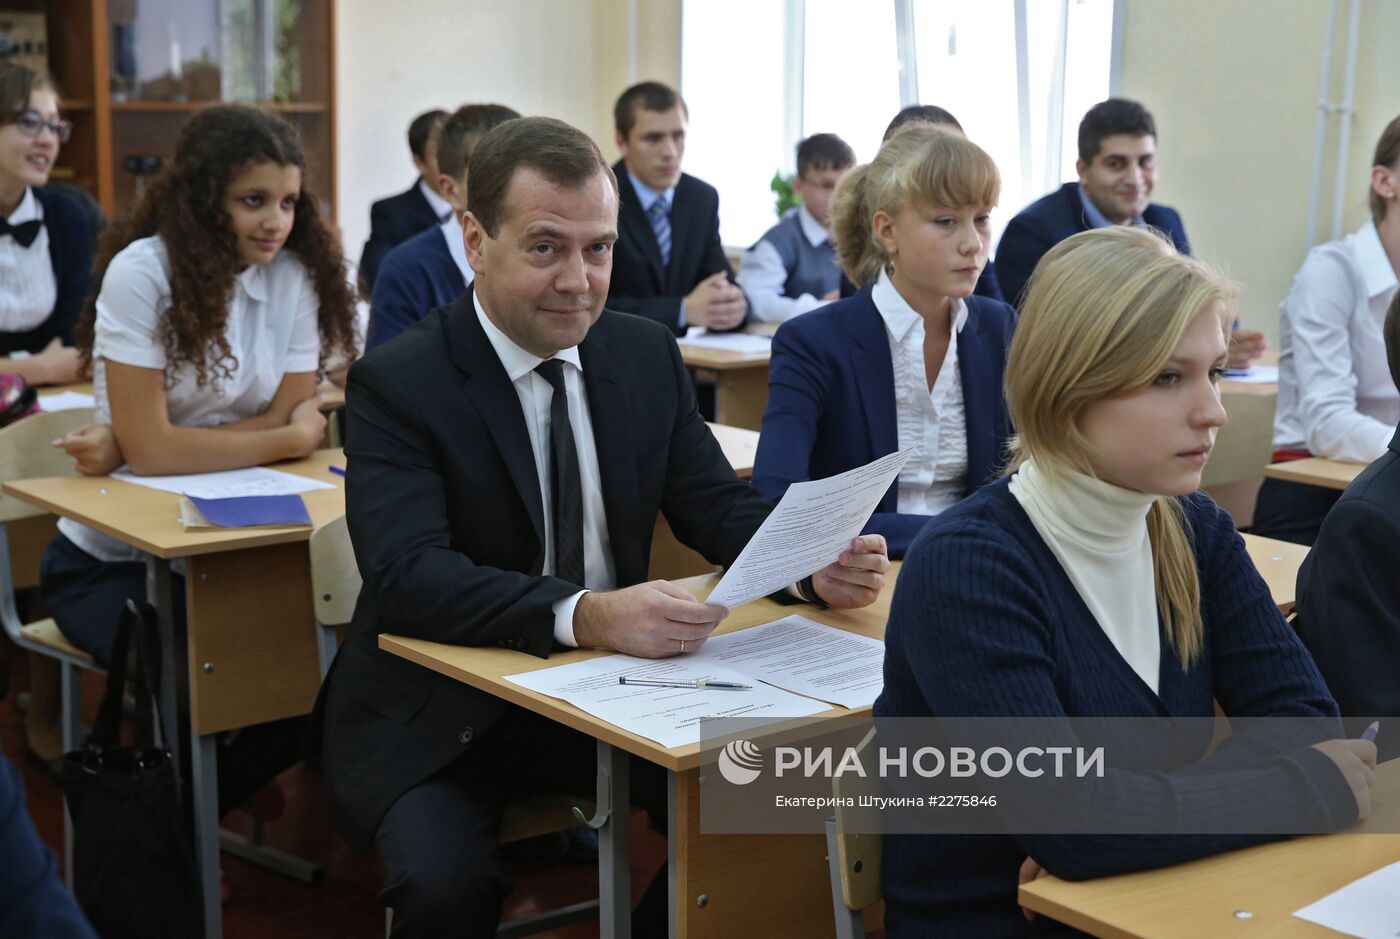 Рабочая поездка Д.Медведева во Владимир